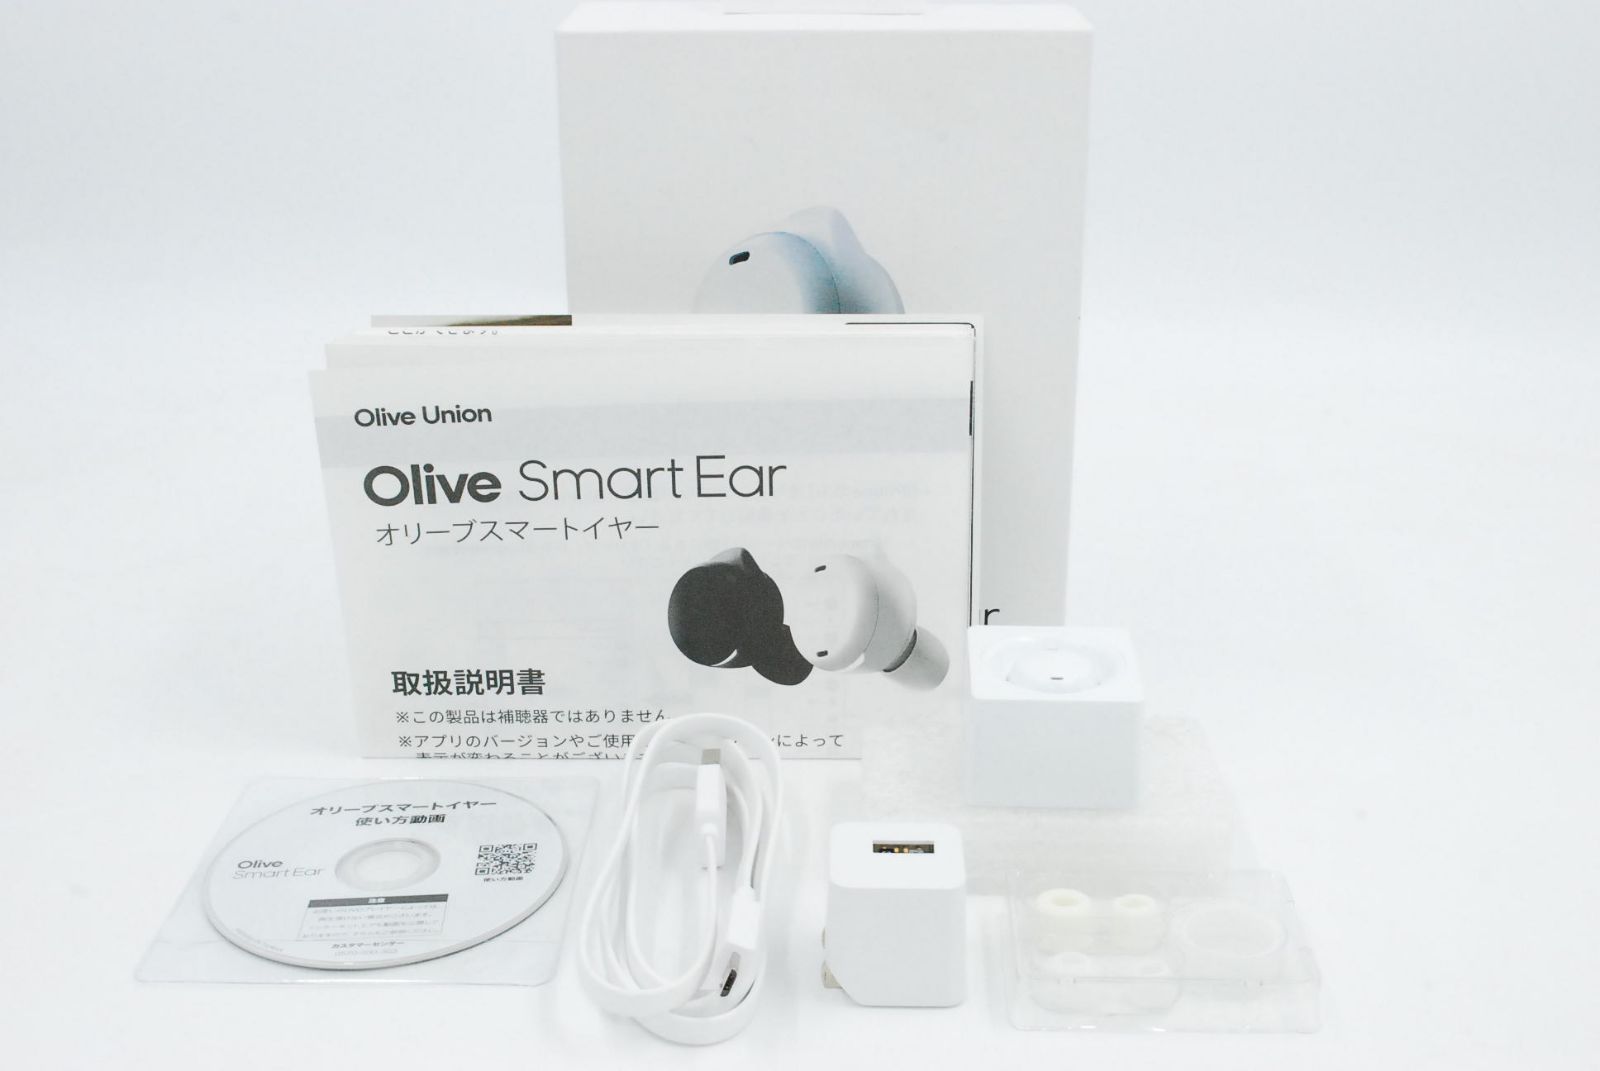 オーディオ機器OliveSmartEar